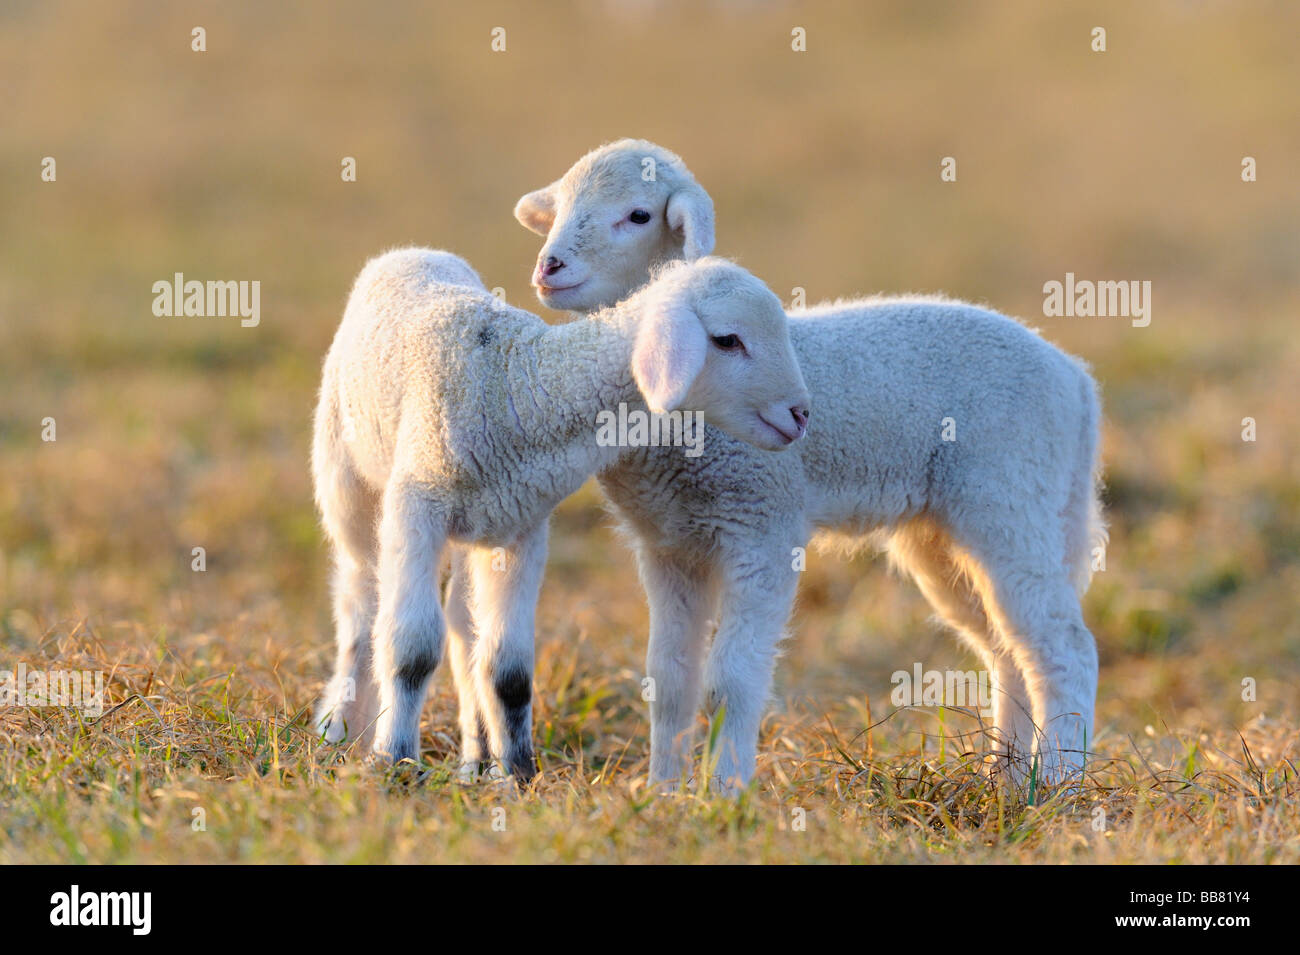 Les moutons domestiques, des moutons, des agneaux mérinos Banque D'Images